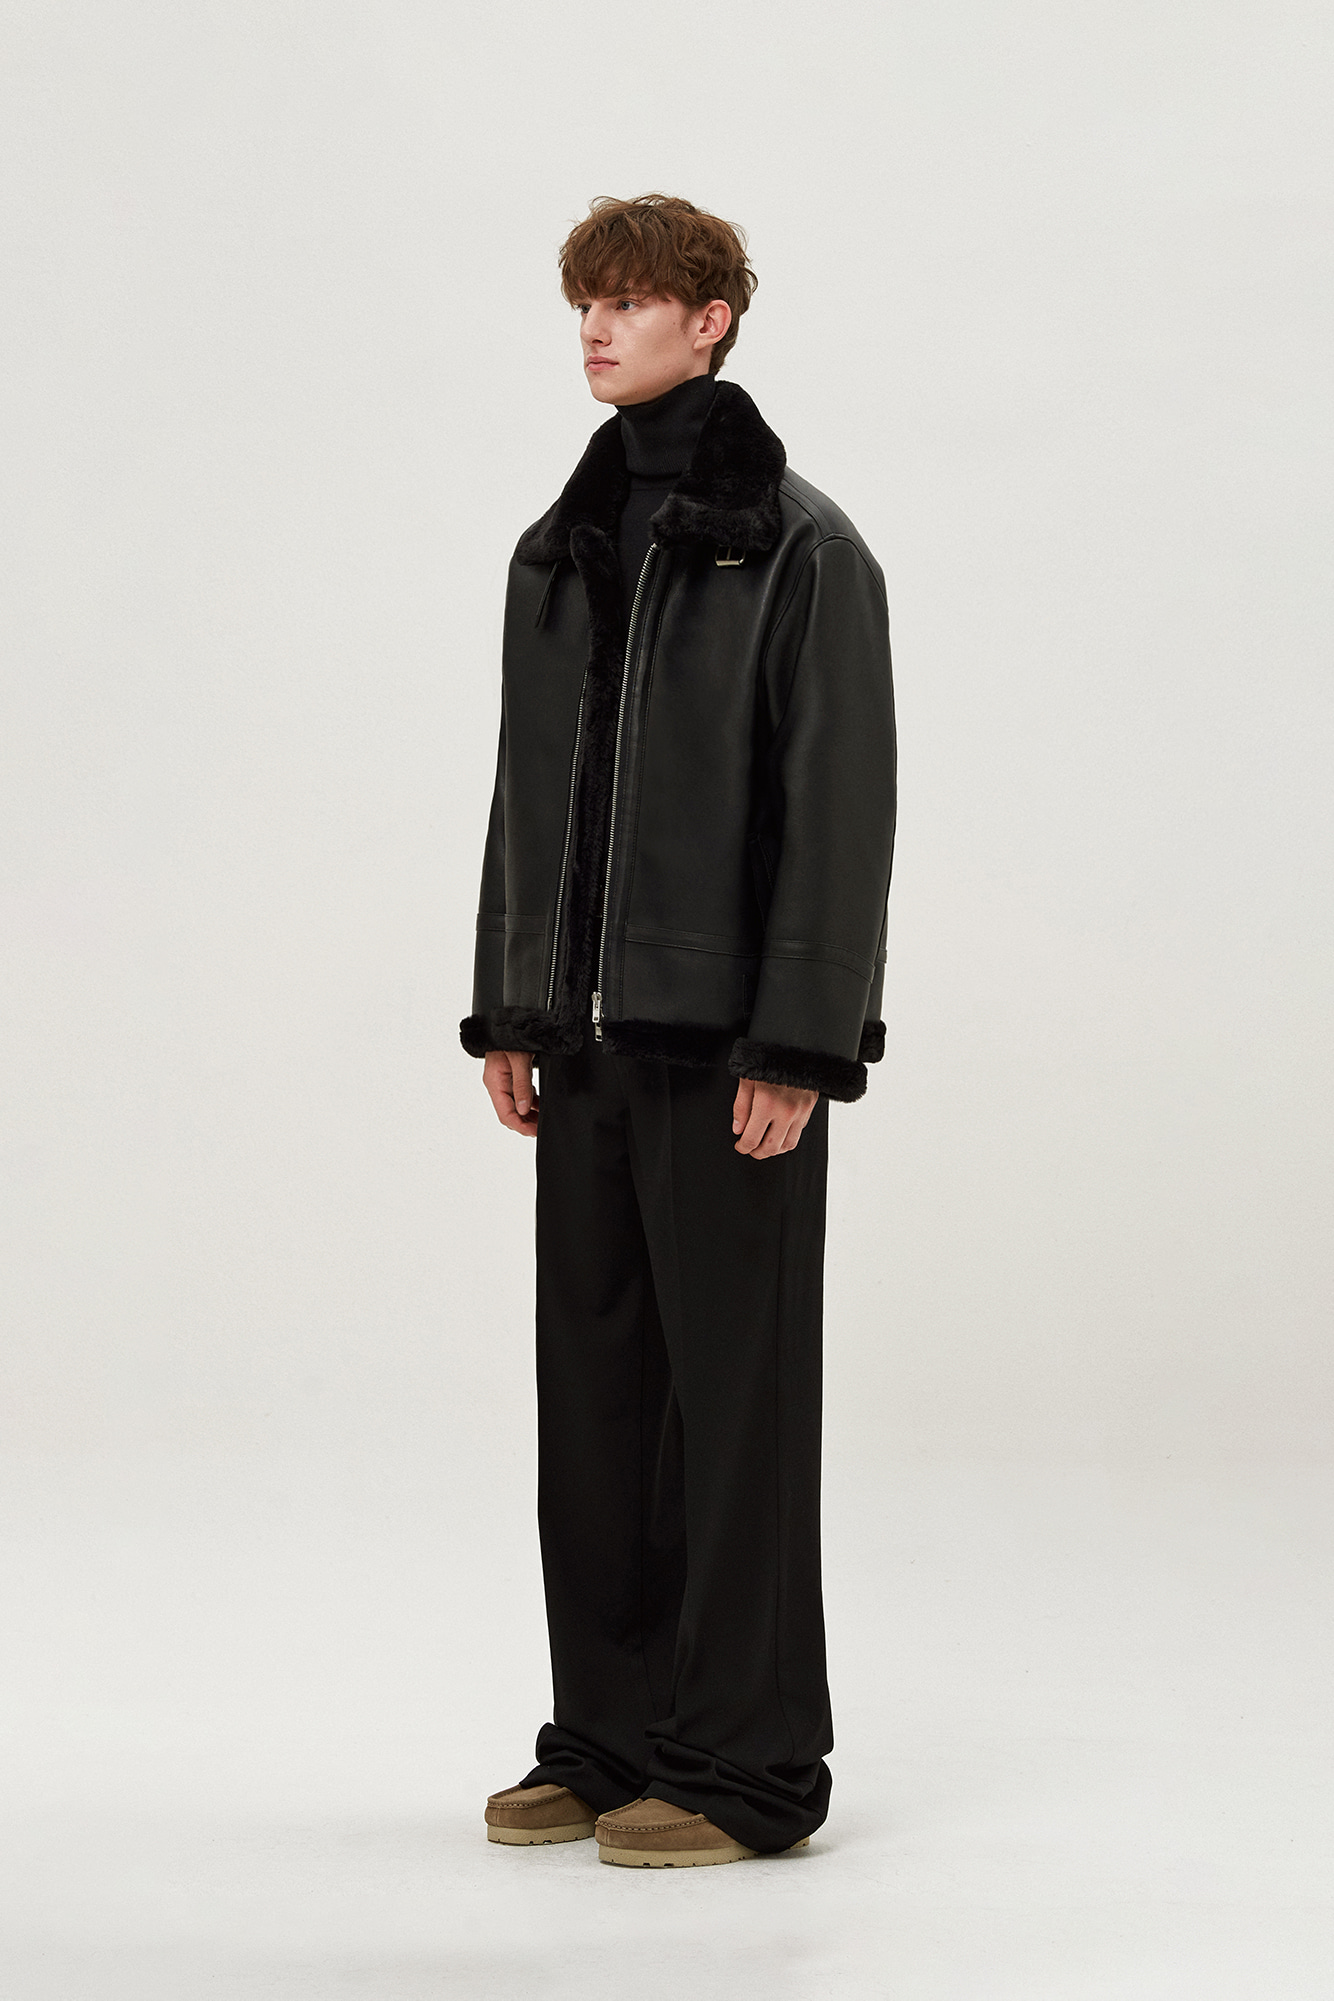 Overfit solid mouton jacket (black)